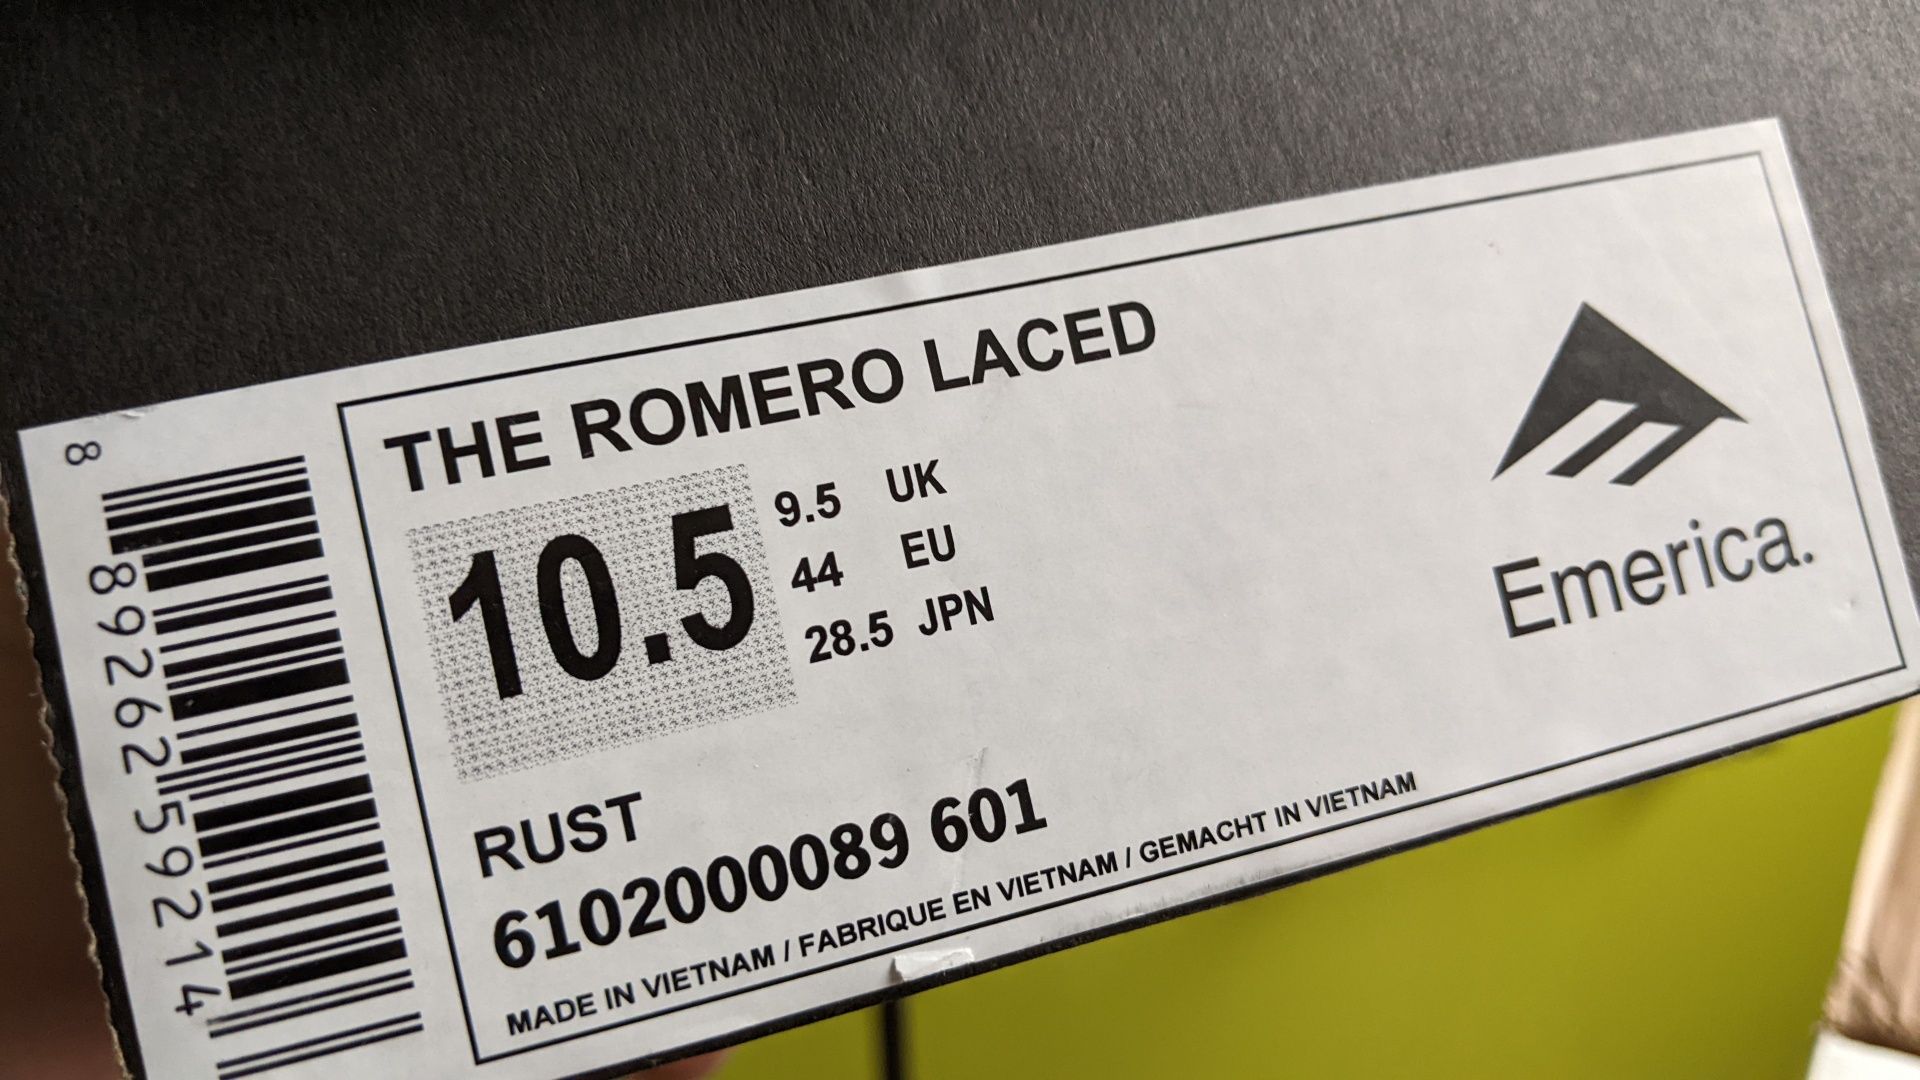 Emerica Romero laced Эмерика скейт кеды